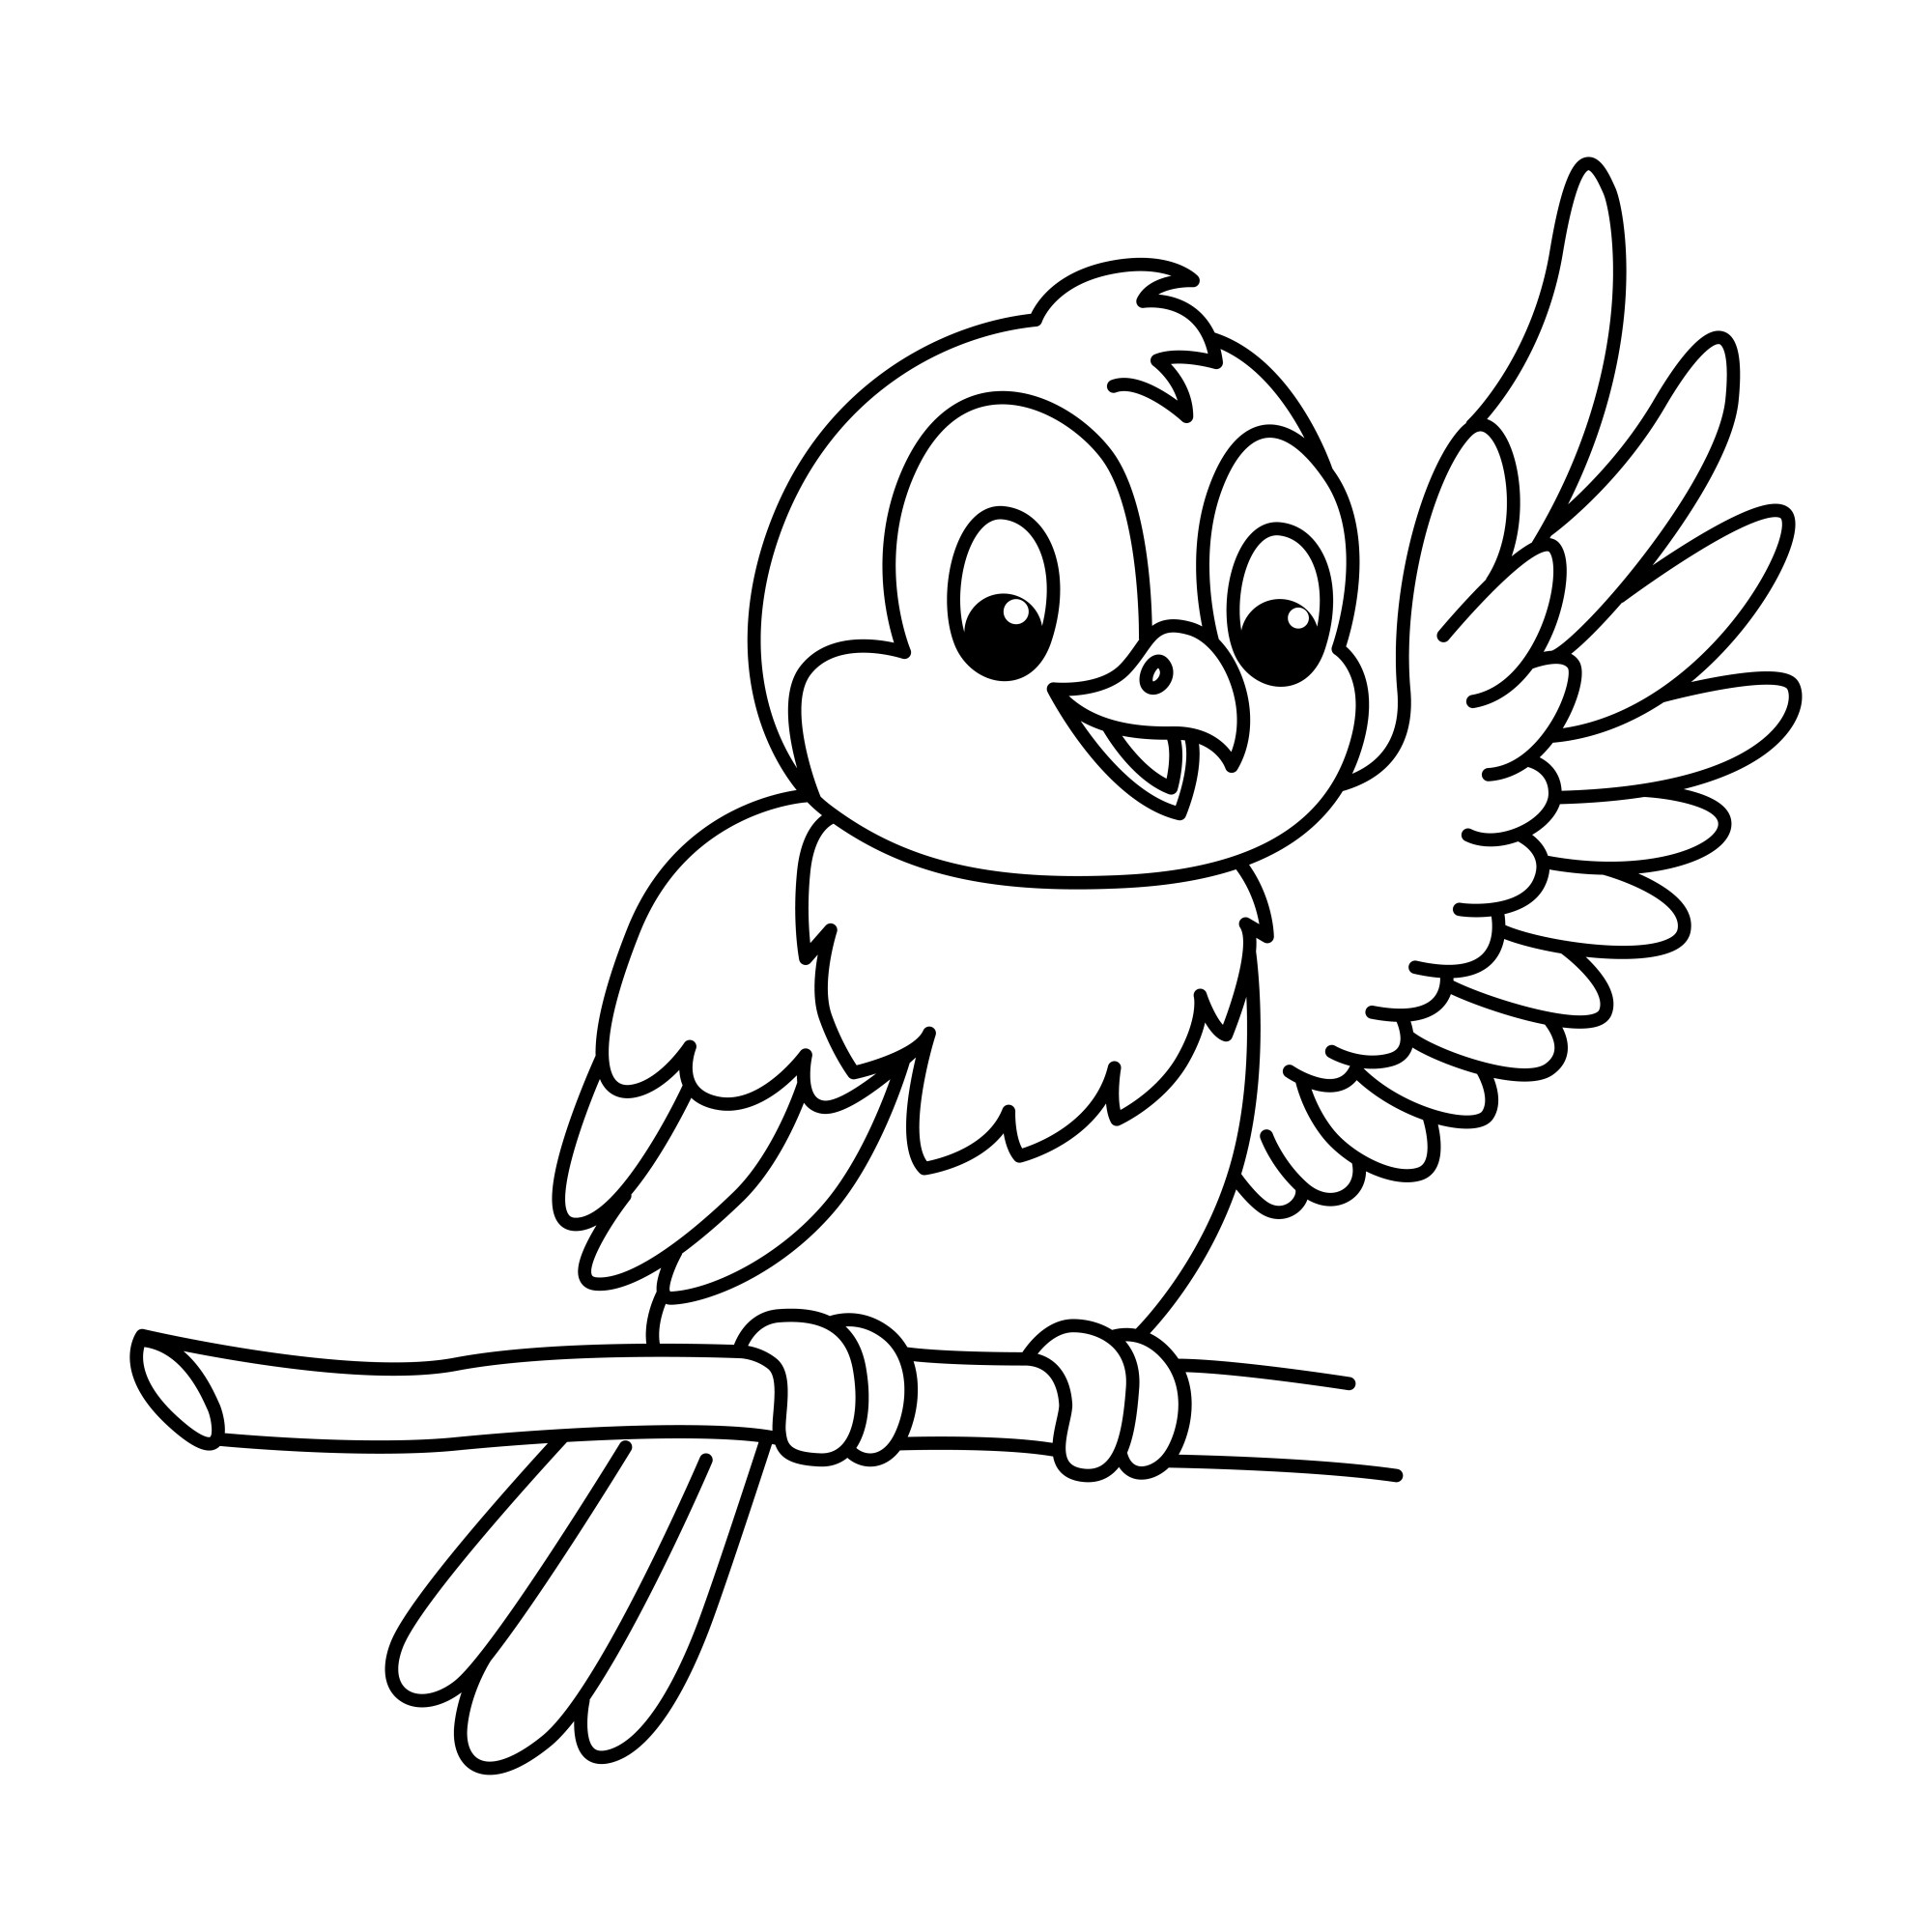 Раскраска для детей: забавная птичка на ветке с поднятым крылом